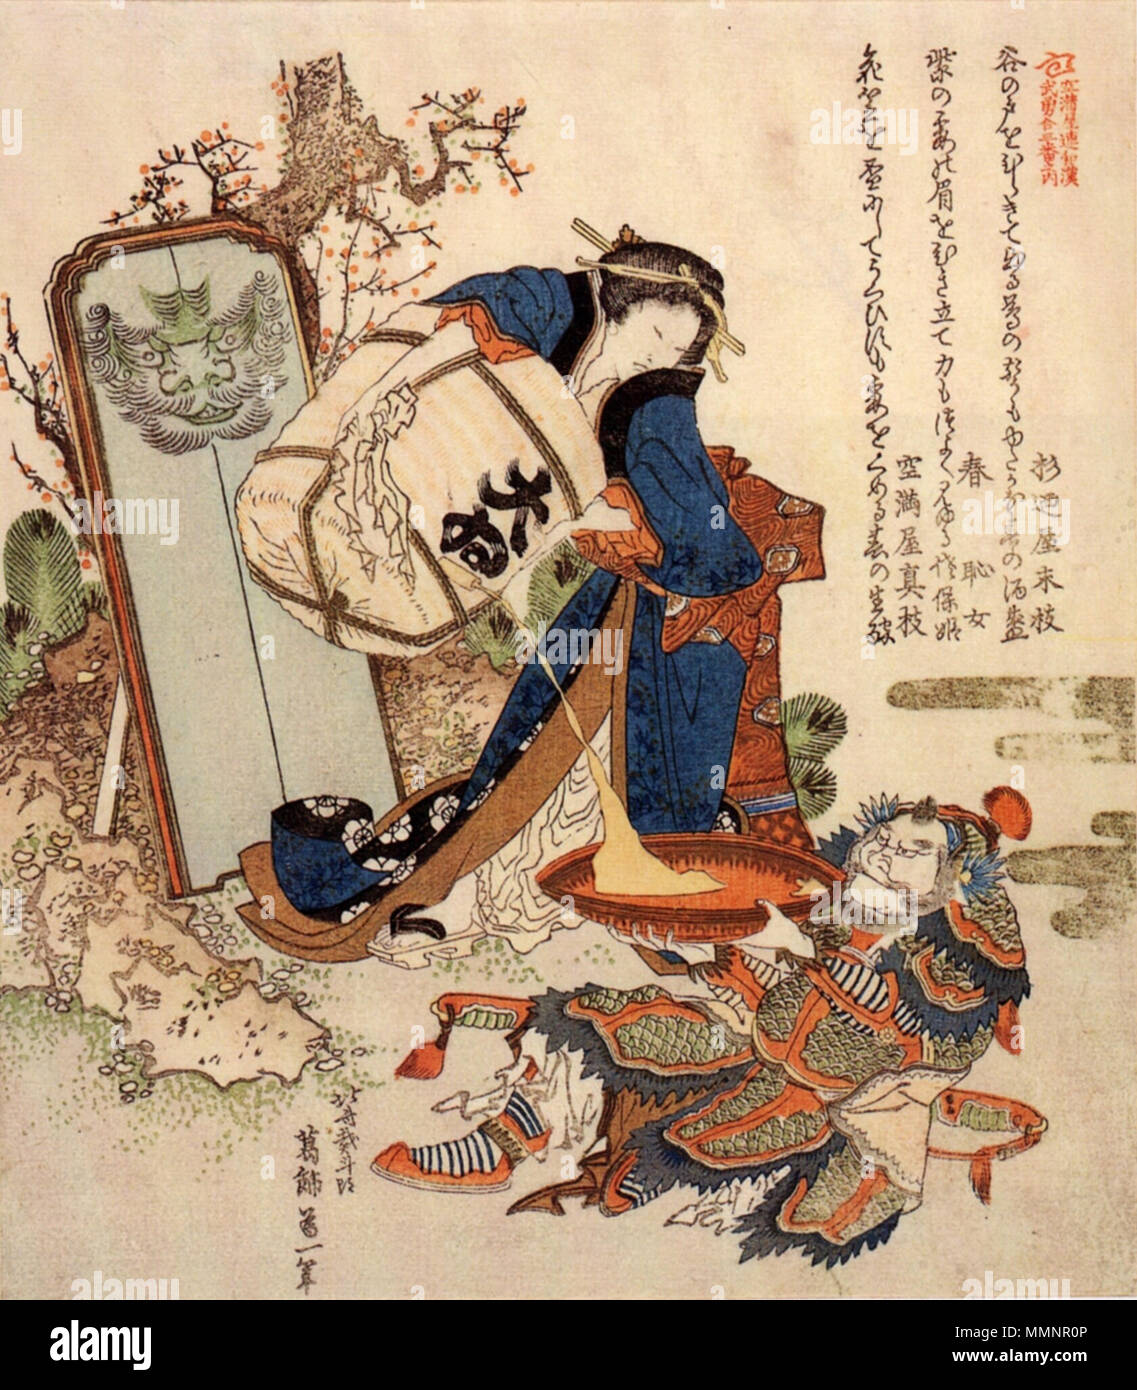 . Englisch: ein Porträt von Hokusai seiner Tochter+?? Und Lüfter Kuai. Vermutlich der Titel ist ein Wortspiel auf ihre Kunst name, Sakae. Es ist jedoch vollkommen anders als das Japanische original Titel. Das japanische Original Titel bedeutet "Kombinierte Bilder der tapfere Menschen aus Japan und China, +? iko und Ventilator Kuai". Der ursprüngliche Titel hat nicht den Charakter von Willen und ihr Name wird nicht Sakae aber Ei. Es gibt keine Tatsache, dass Hokusai rief sie Sakae. Iko (+??????? ա?) war die Japanische legendären starke Frau von "Kokon Chomonj+?". +? Iko wurde auch von anderen ukiyoe Künstler wie Utagawa K gezeichnet Stockfoto